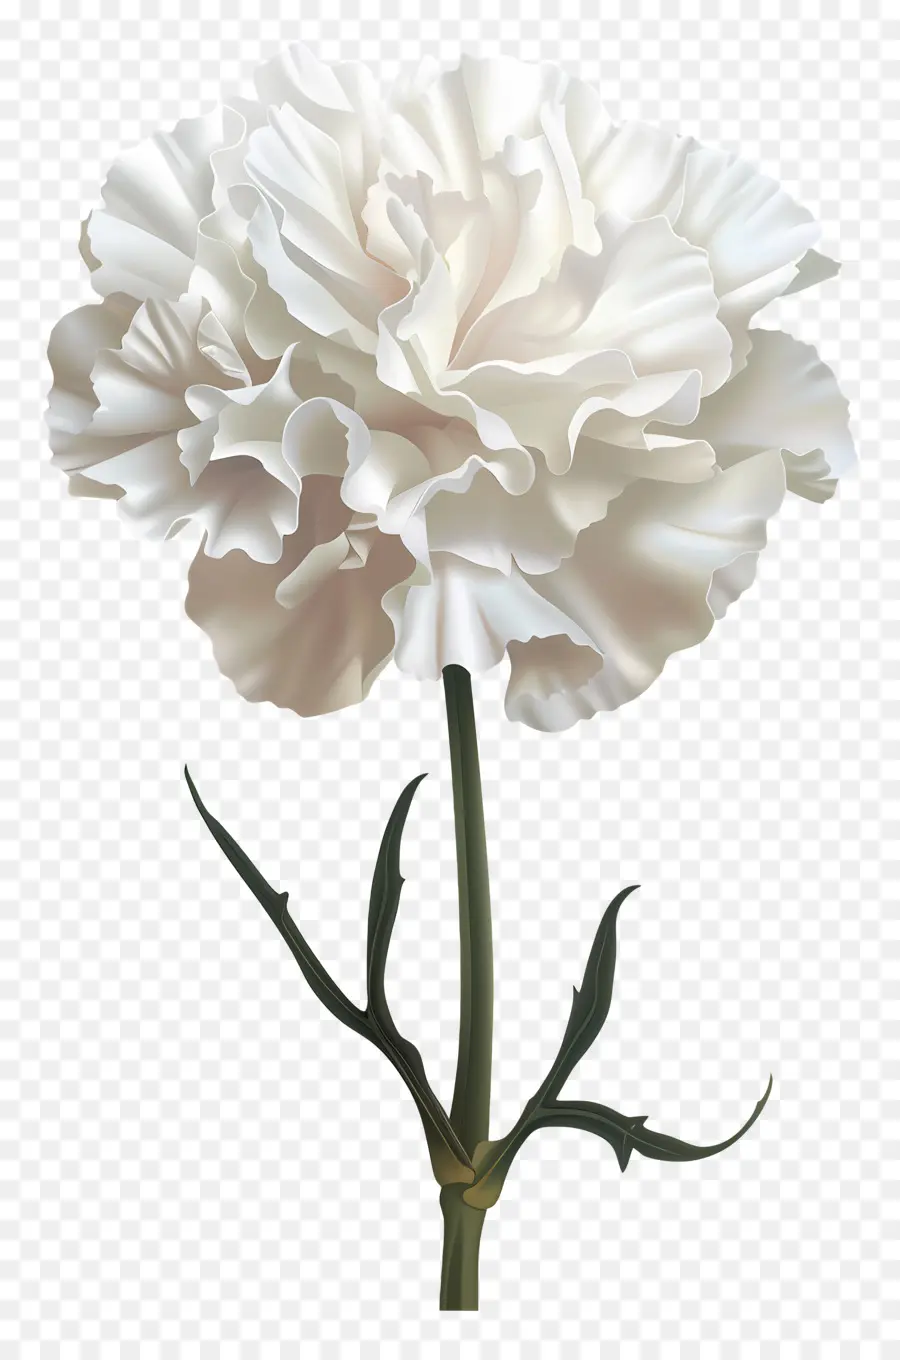 Blütenstiel - Weiße Nelke mit verwelkten Blütenblättern, aber frisch